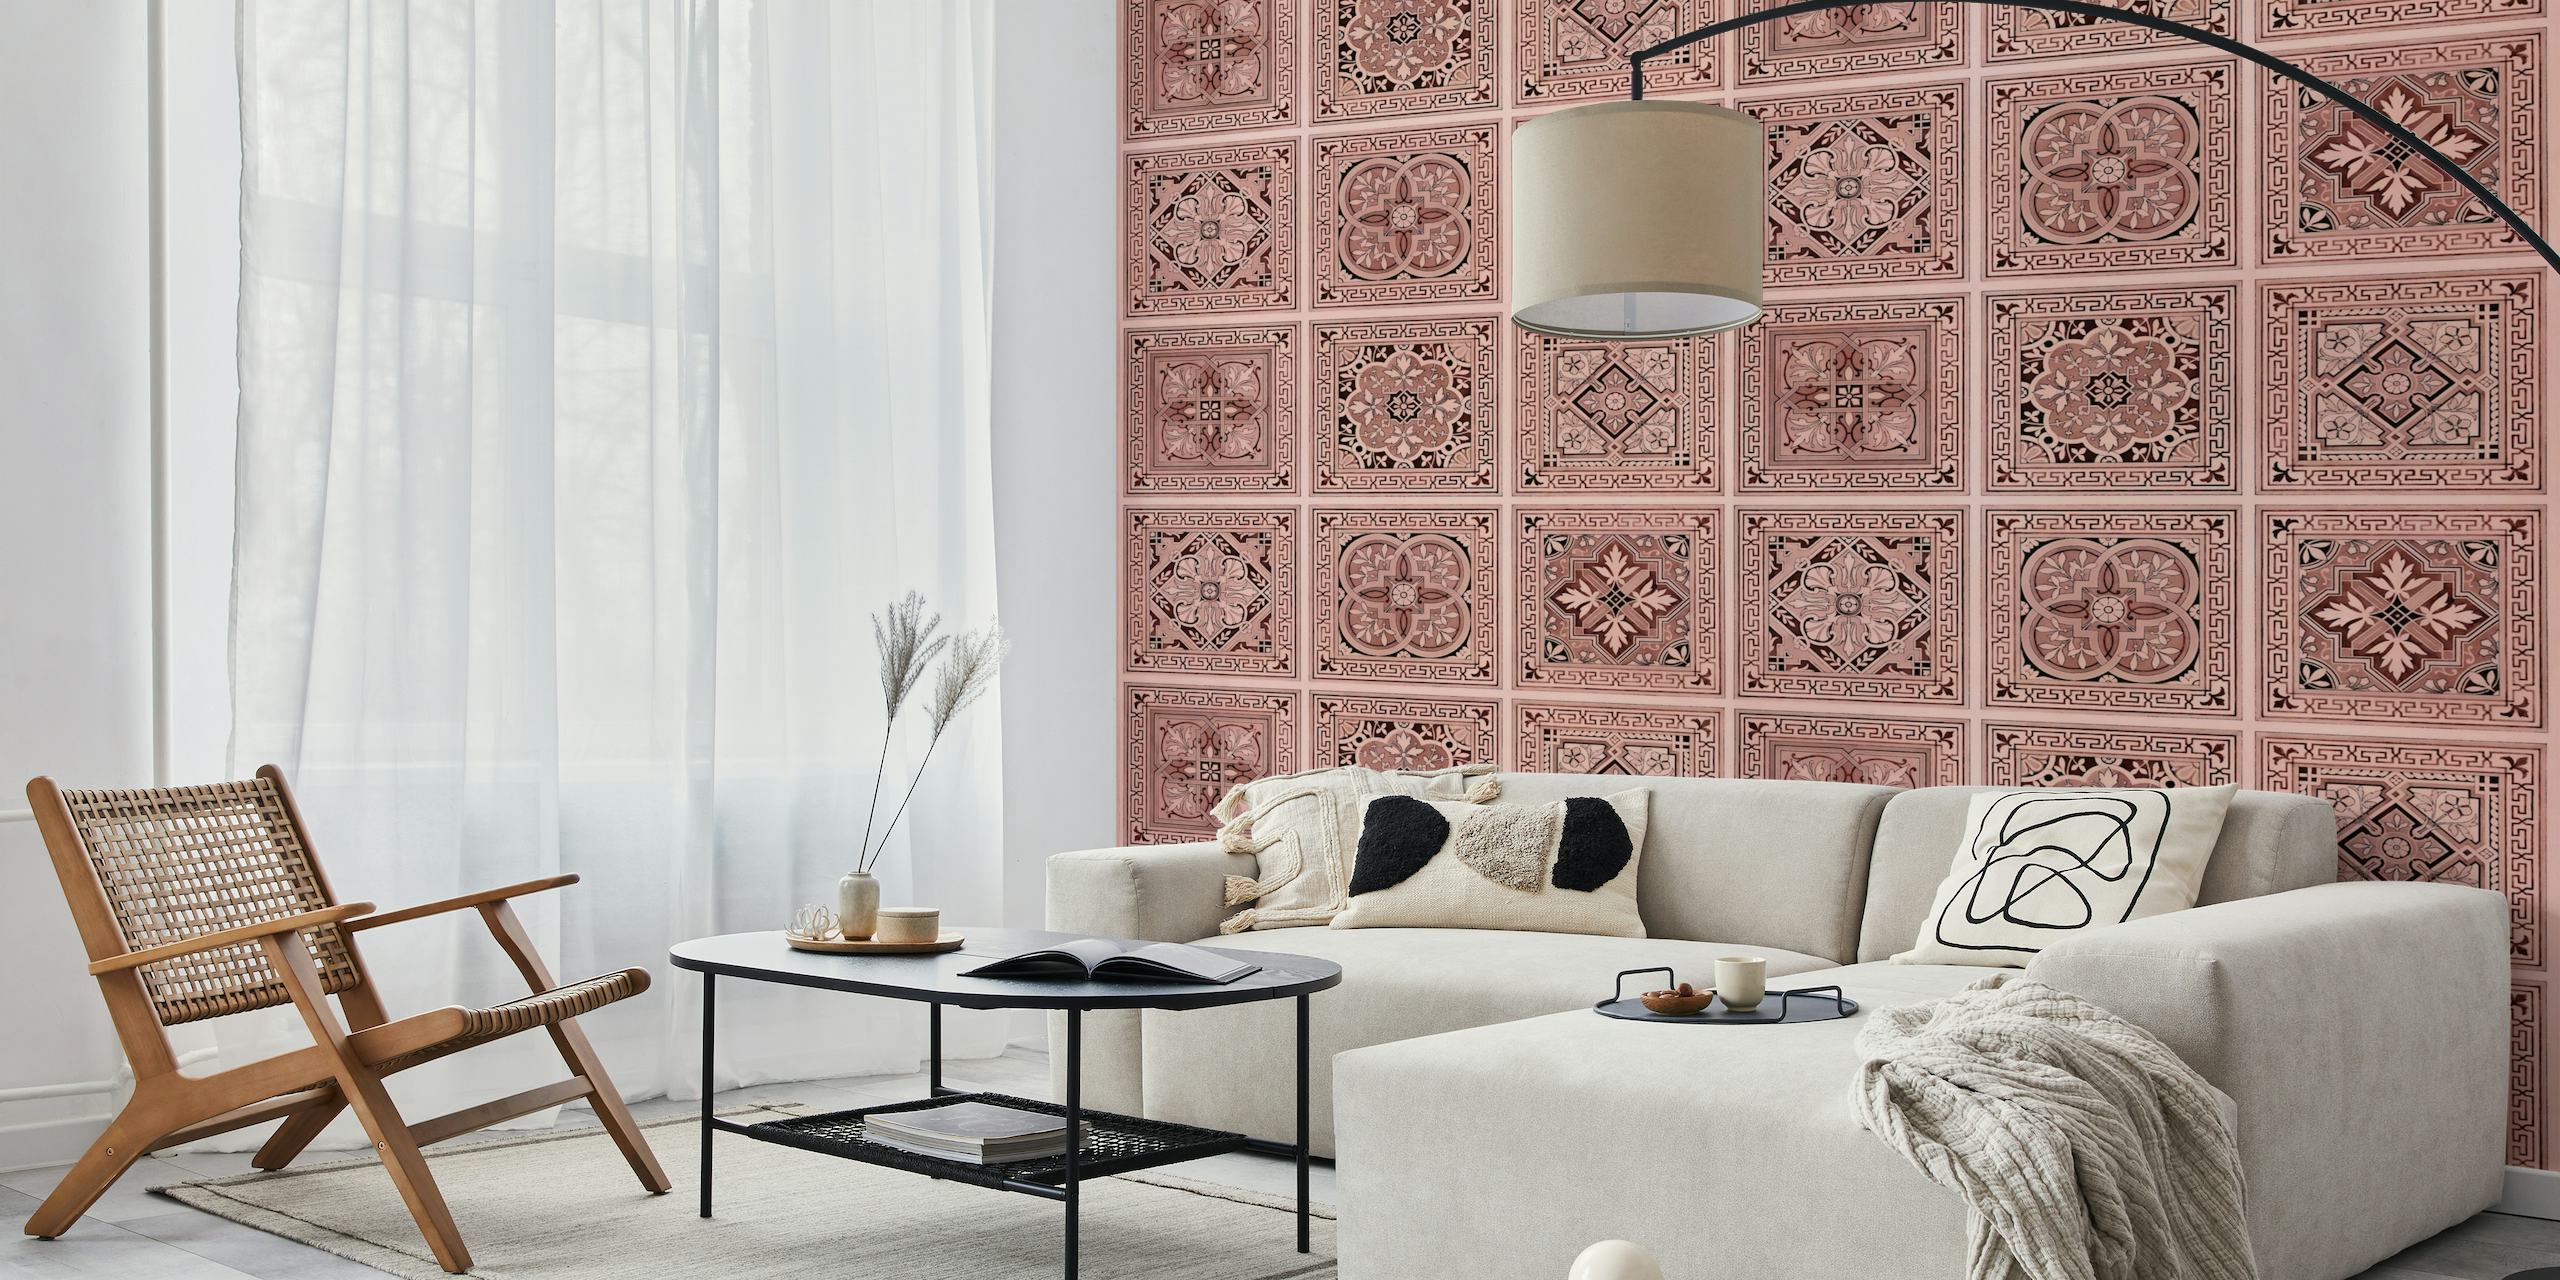 Nudekleurige tegelpatroon muurschildering met sierlijke bloemmotieven, perfect voor interieurdecoratie.